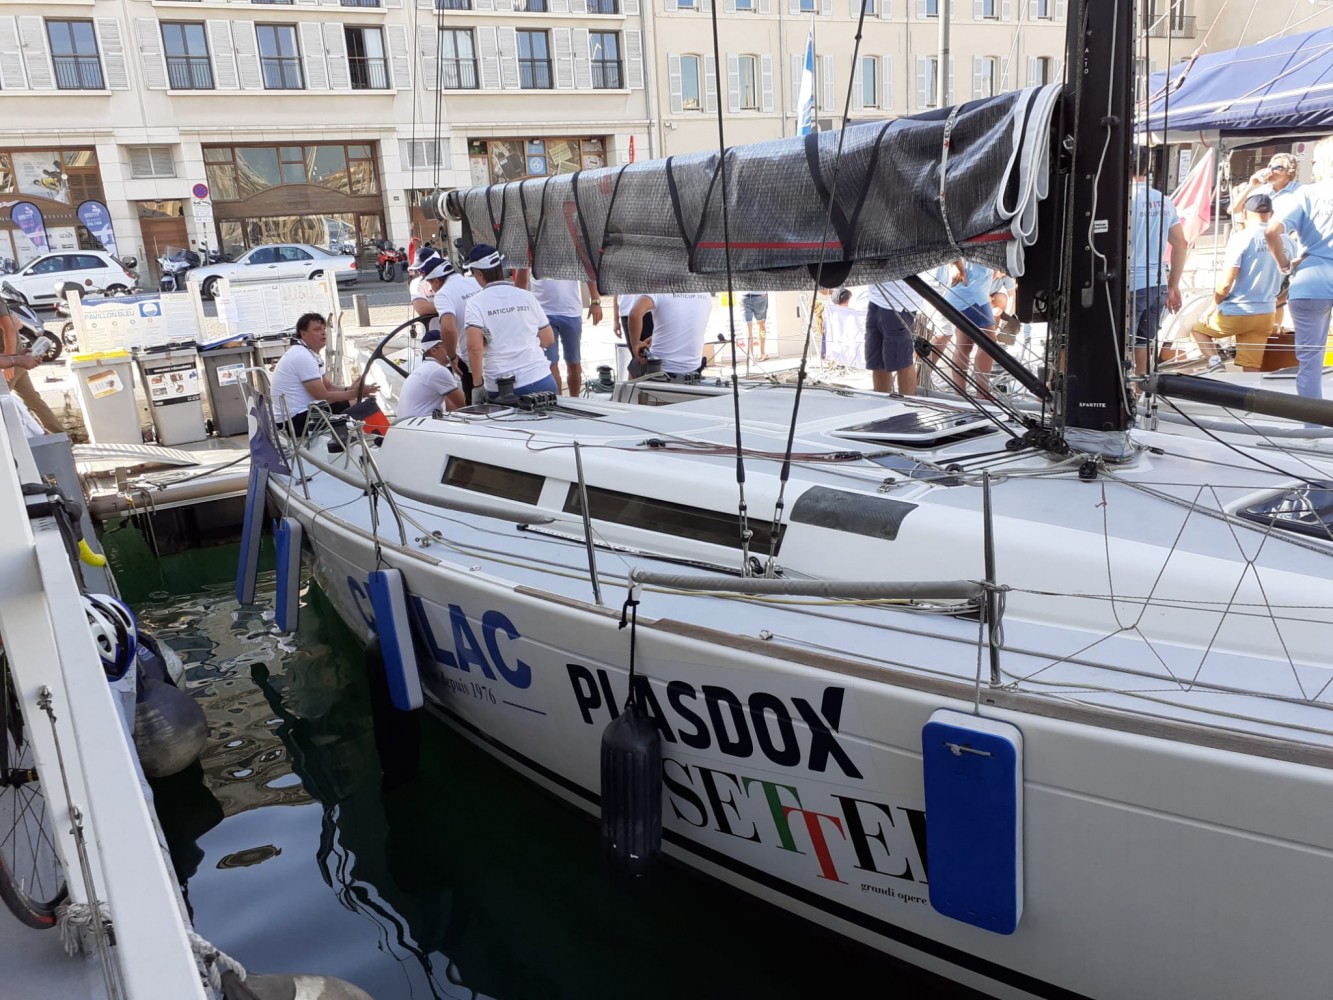 Plasdox sponsor partenaire du bateau Cealac pour la Baticup